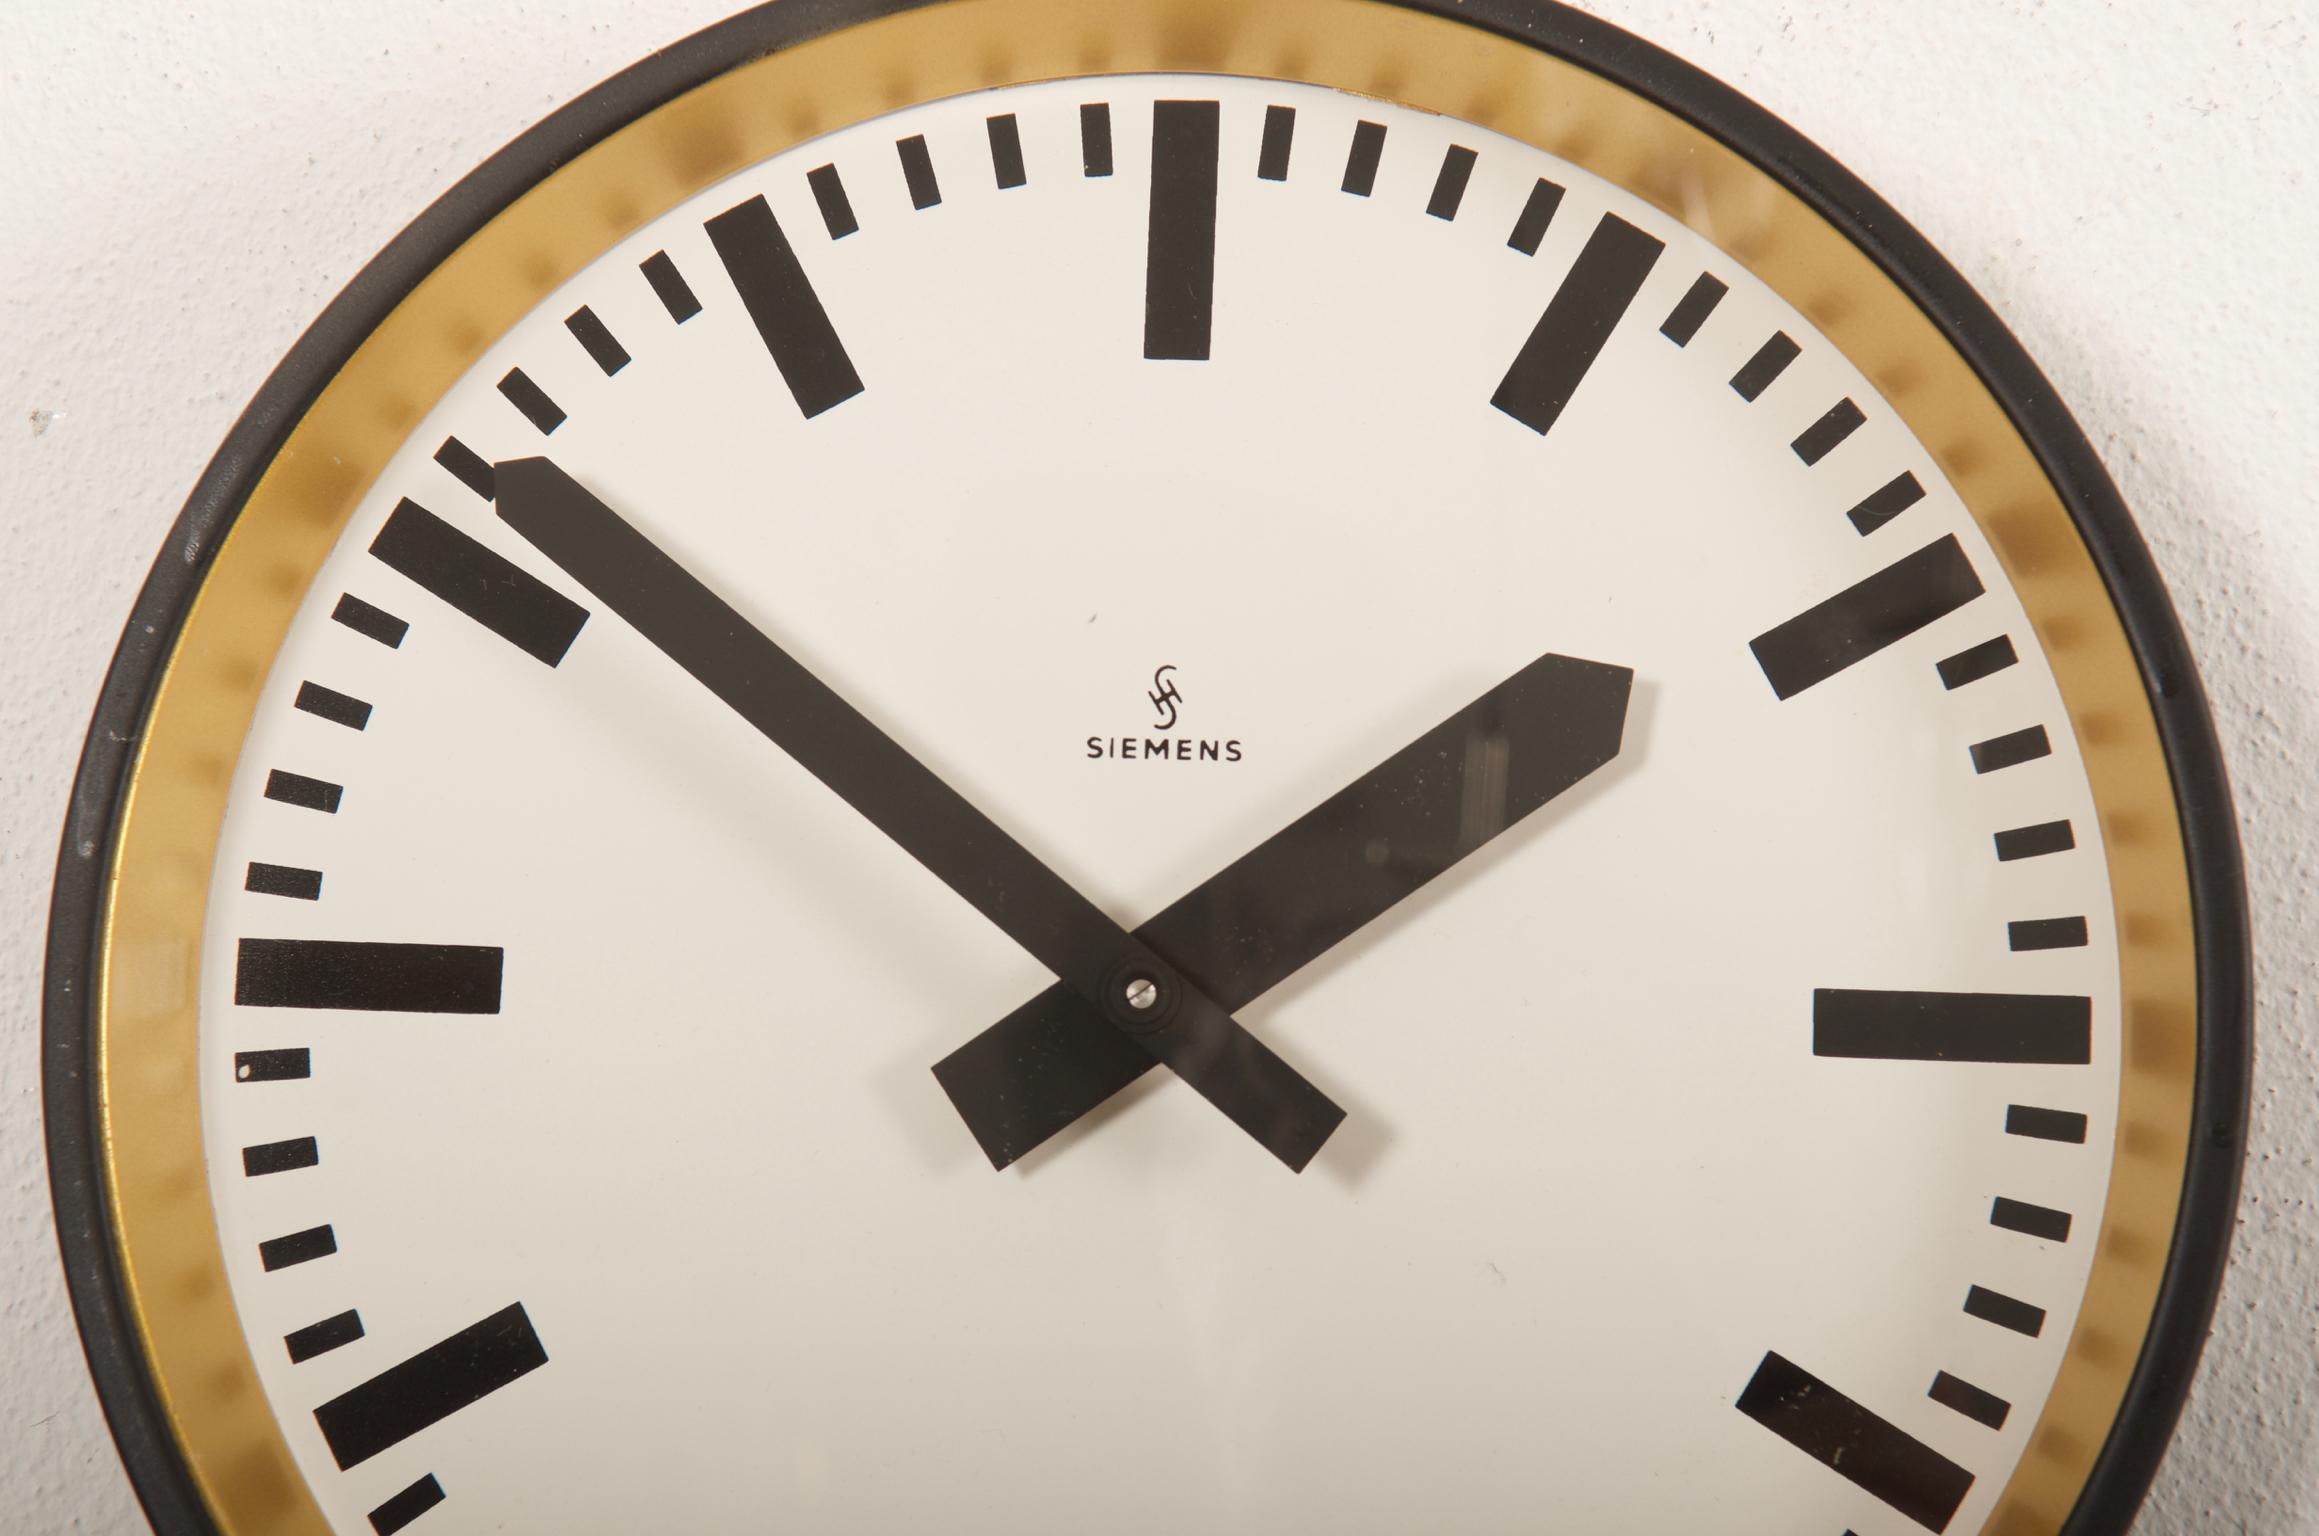 Énorme cadran d'horloge de 43 cm en acier peint, fabriqué en Allemagne dans les années 1950.
Ancienne horloge d'esclave, elle est aujourd'hui équipée d'un mouvement moderne à quartz avec batterie.